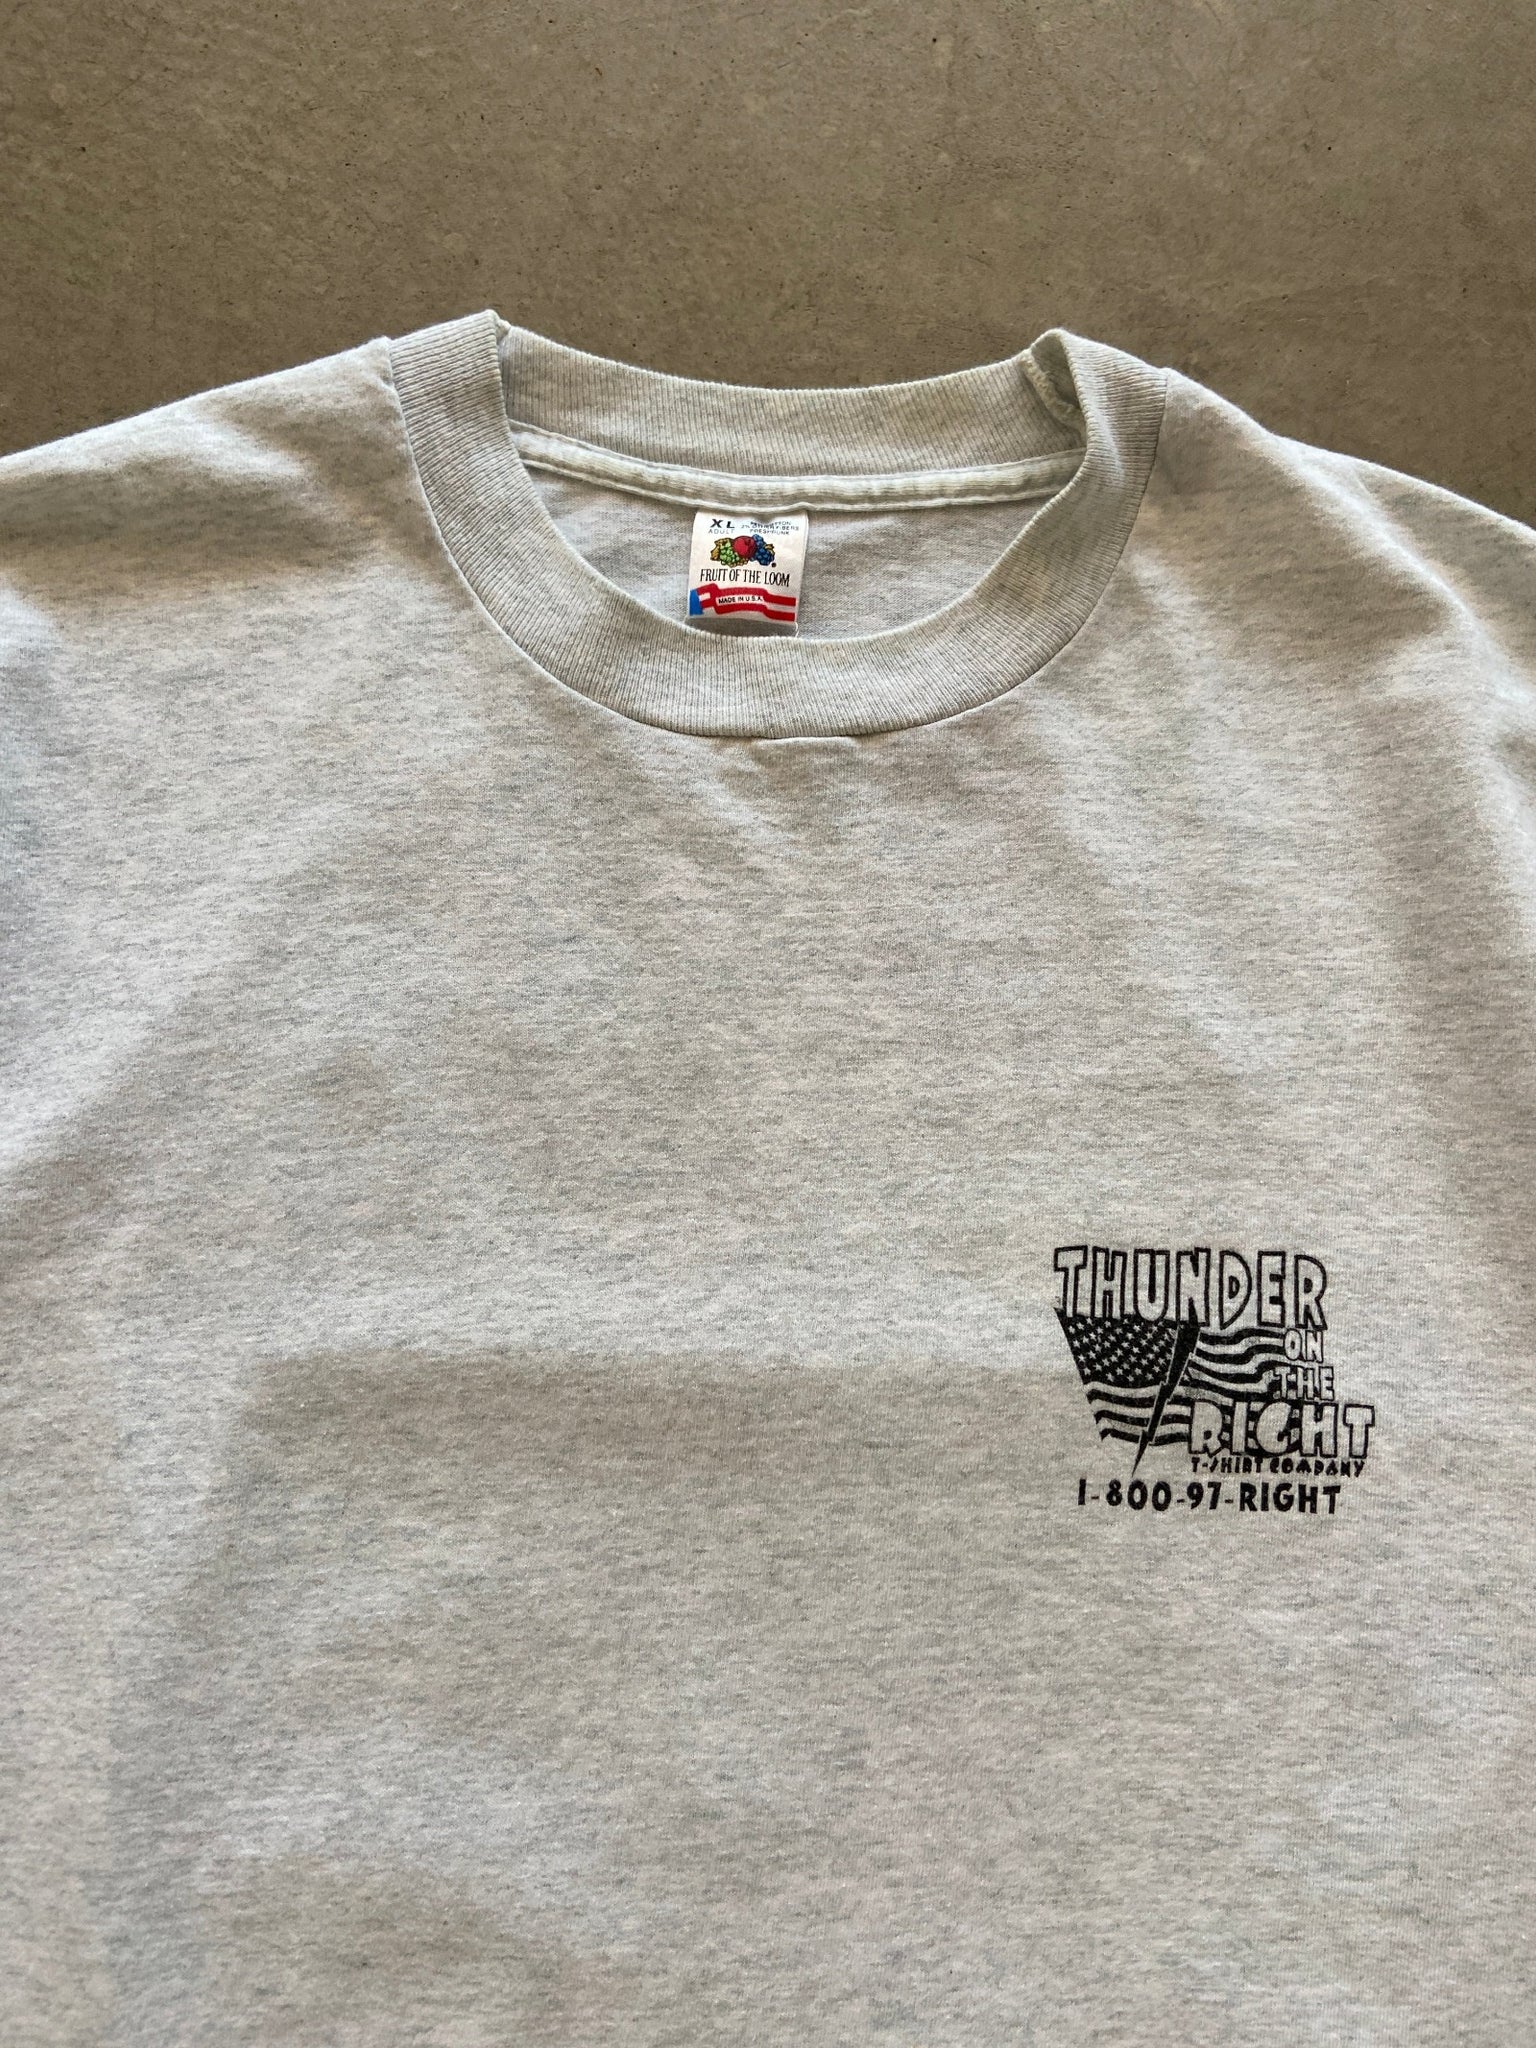 1990's Keep Your Guns T-Shirt - XL